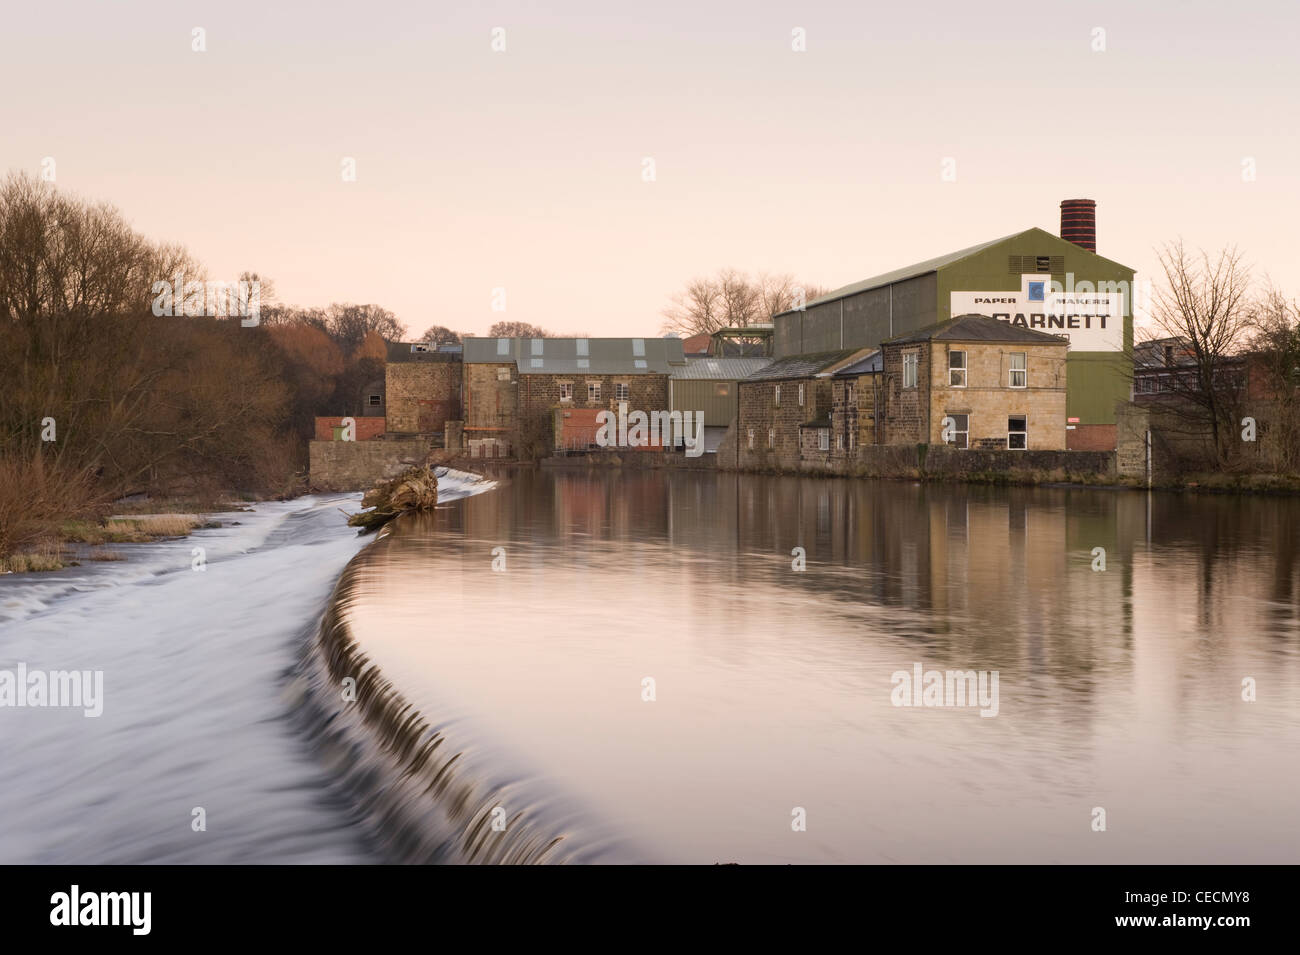 L'eau qui coule doucement la rivière Wharfe & cascade sur weir sous Ciel de coucher du soleil, du grenat historique moulin à papier au-delà - Otley, West Yorkshire, Angleterre, Royaume-Uni. Banque D'Images